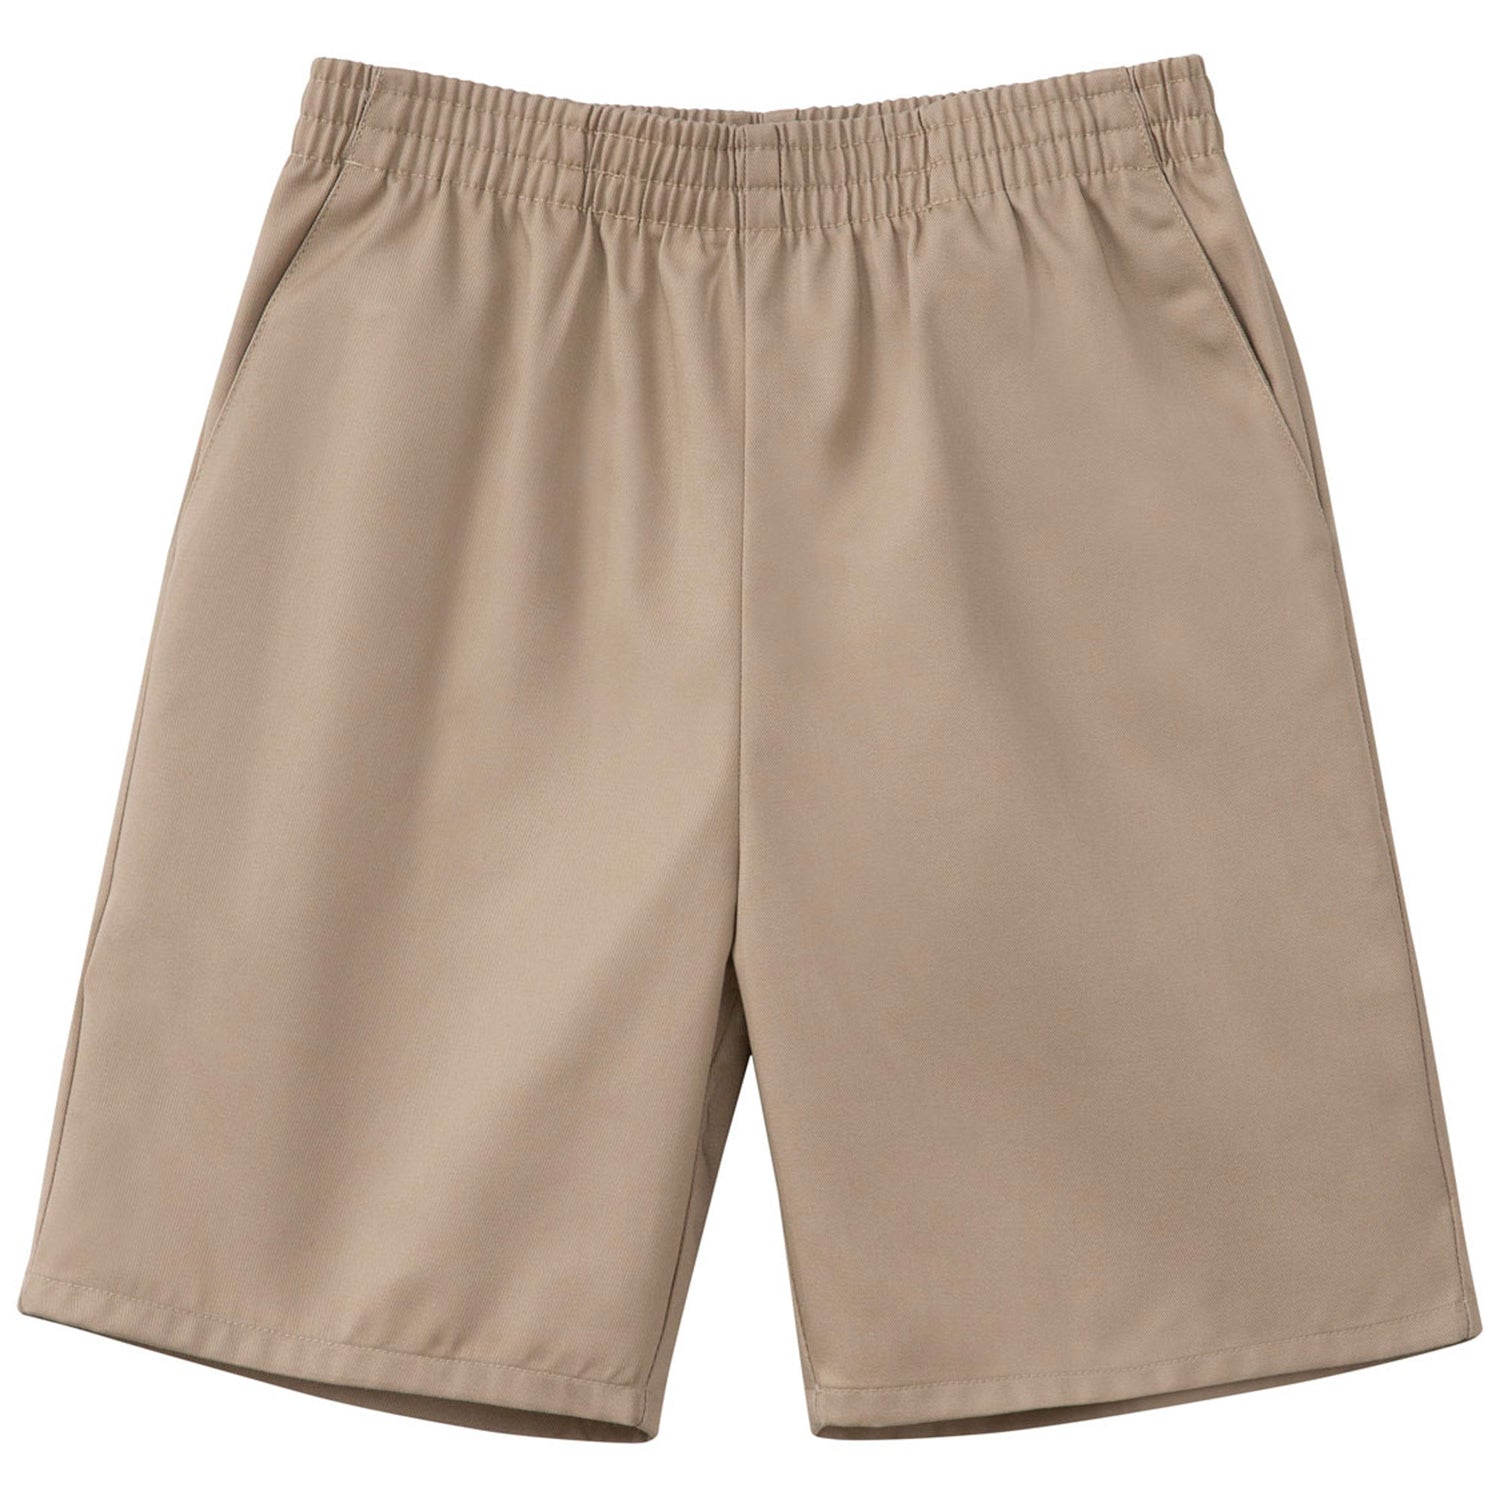 Unisex Shorts/Pants